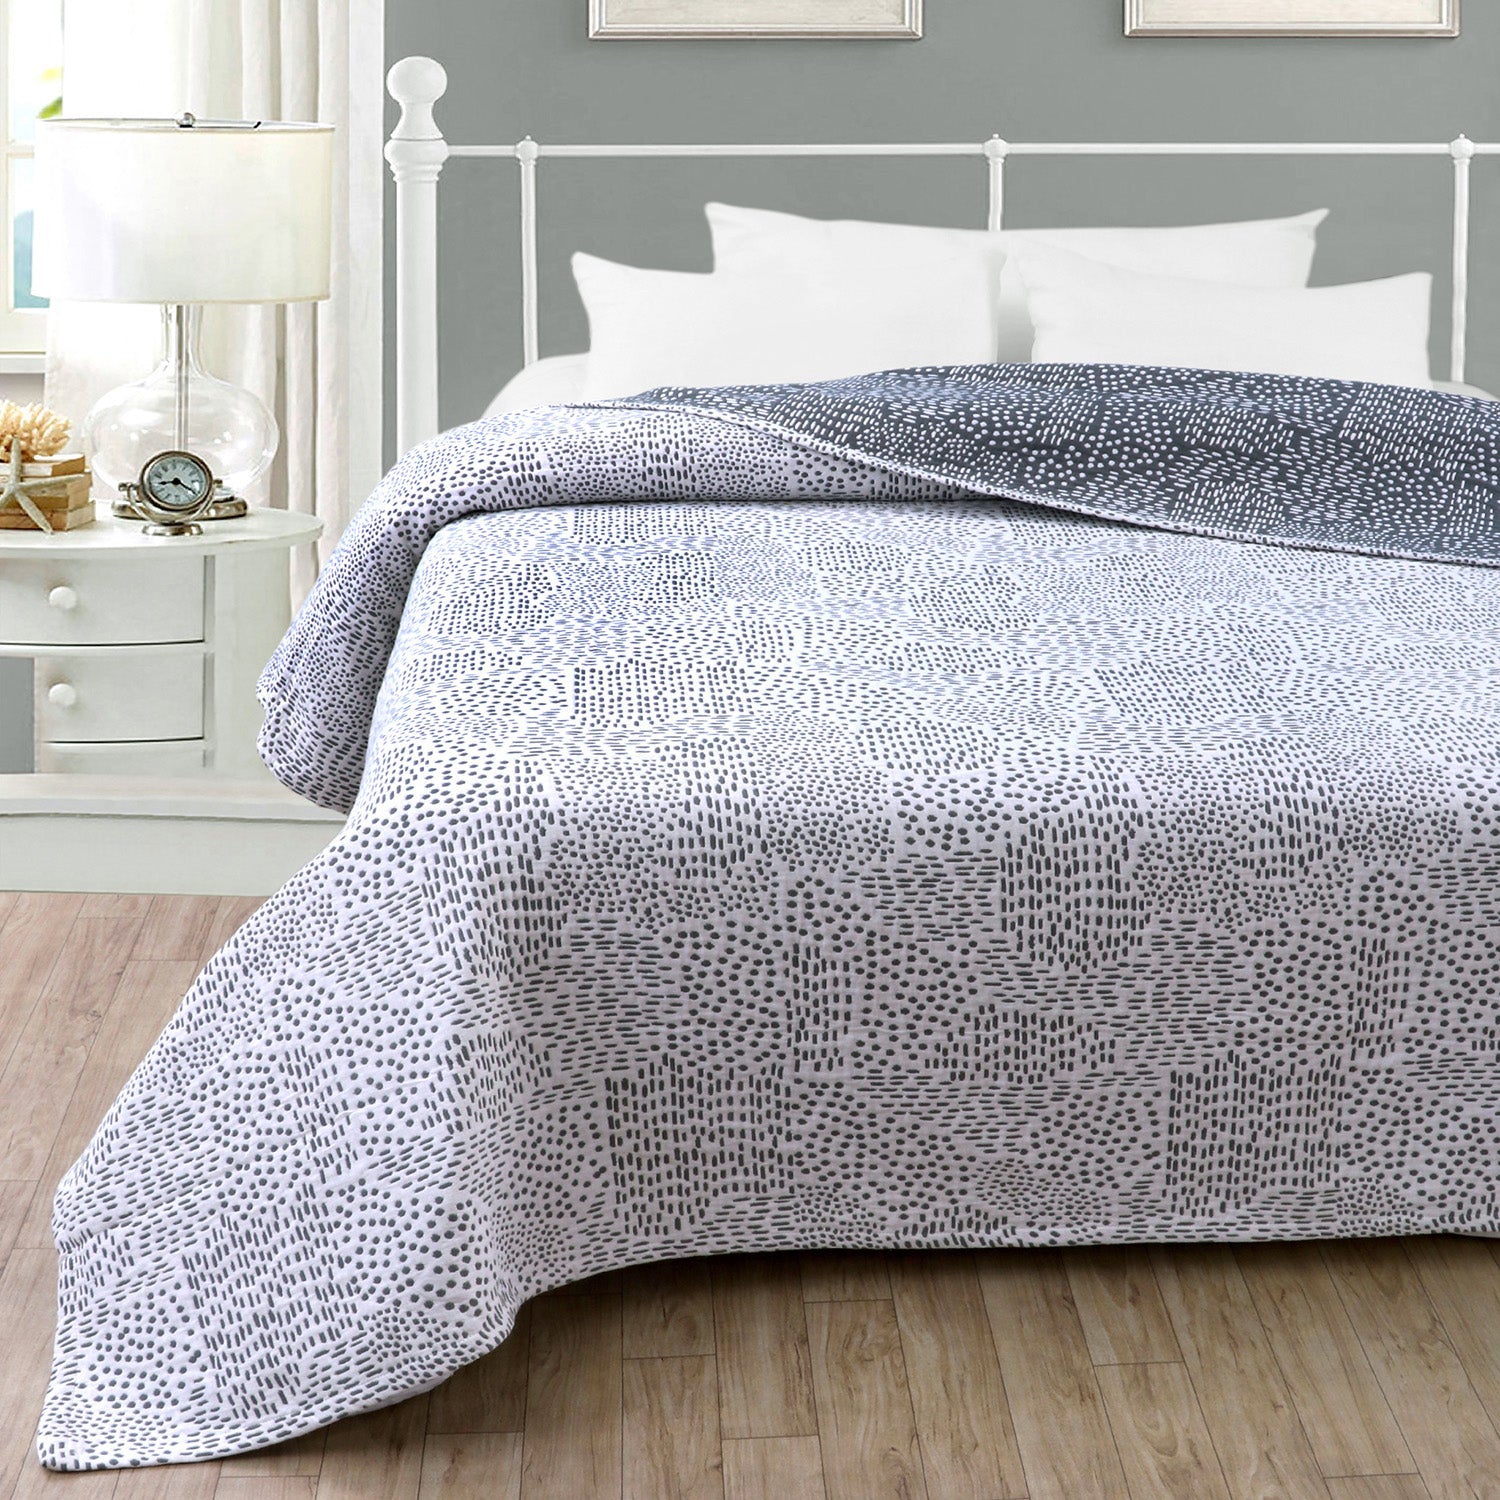 Matelassé blaze & floral design cotton thermal blanket - TreeWool bed blanket